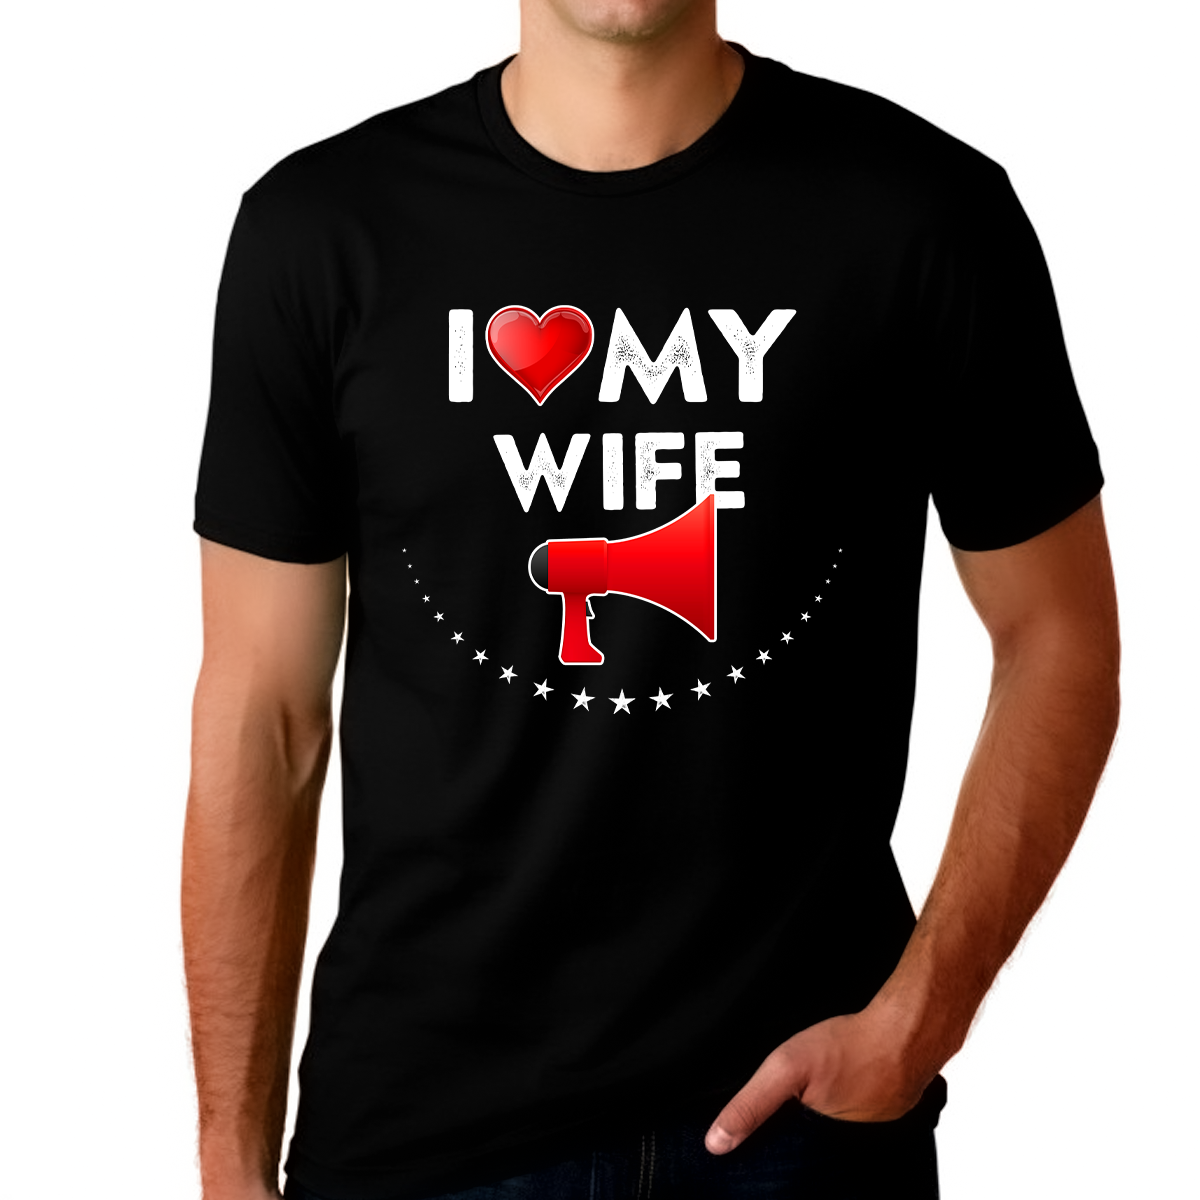 I Love My Wife Shirt Funny I Heart Valentine Shirts for Men Funny Shirt Valentines Day Gifts for Him